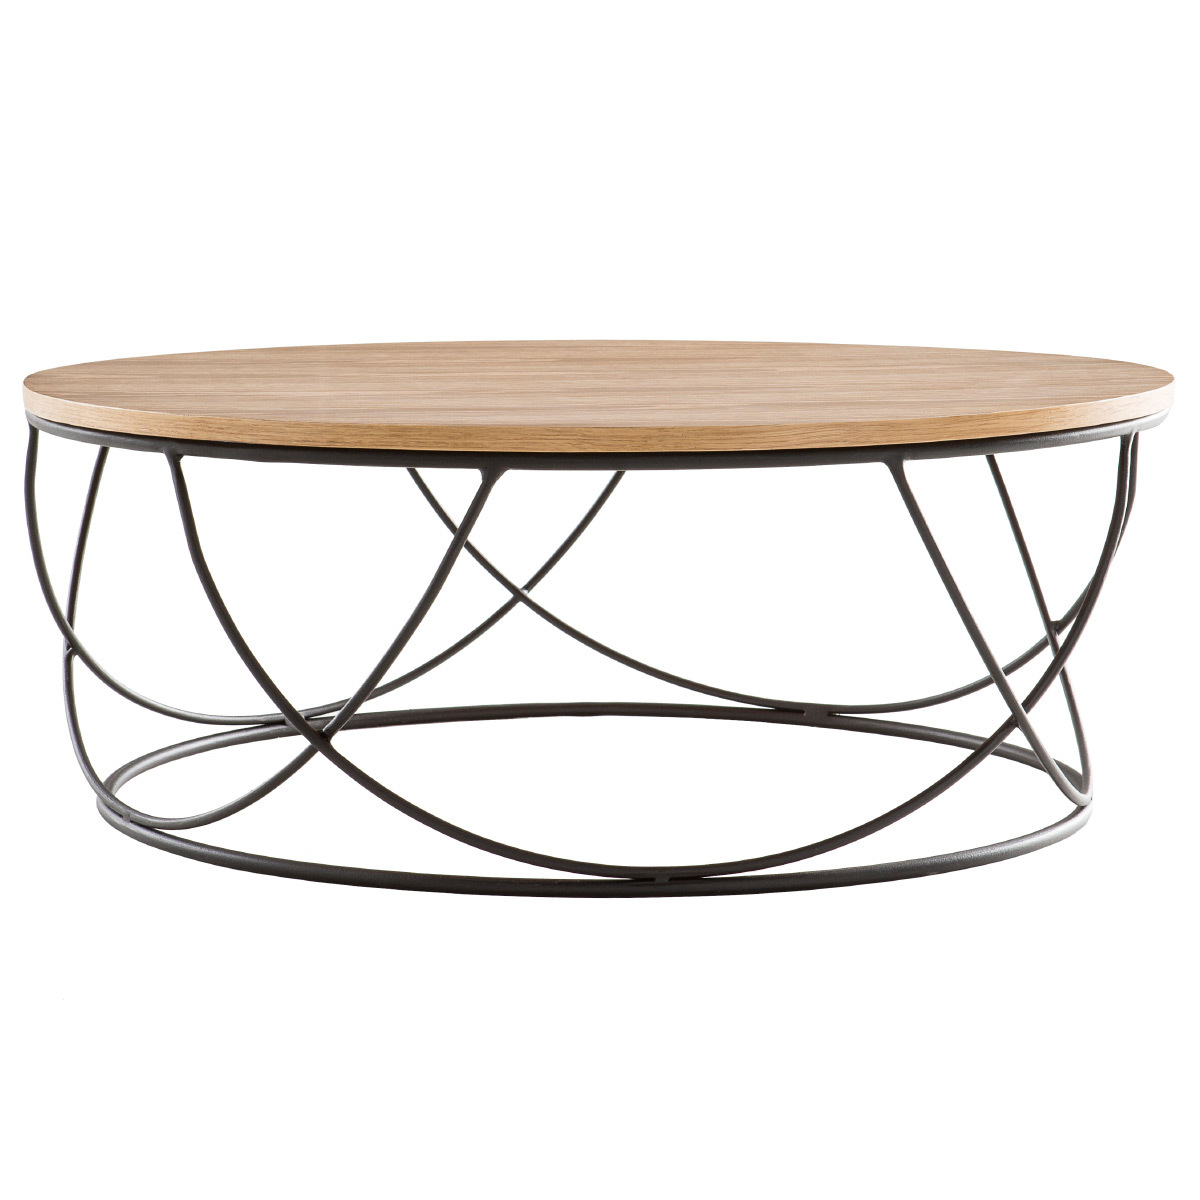 Table basse ronde bois clair chêne et métal noir D80 cm LACE vue1